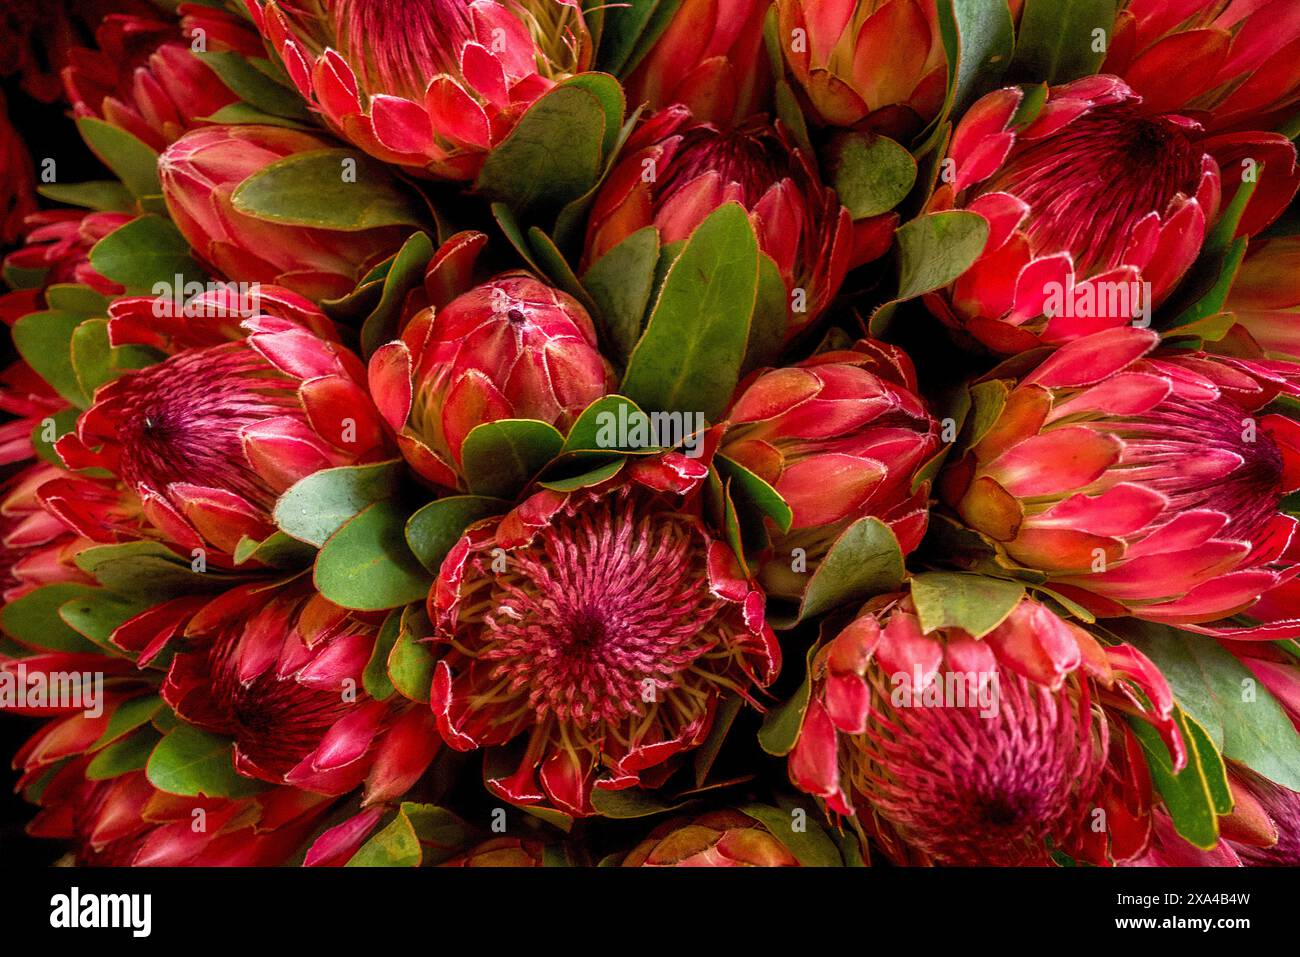 Una vibrante collezione di fiori protea rossi e verdi, raggruppati strettamente insieme, che mostrano i loro intricati motivi di petali e il lussureggiante fogliame. Foto Stock